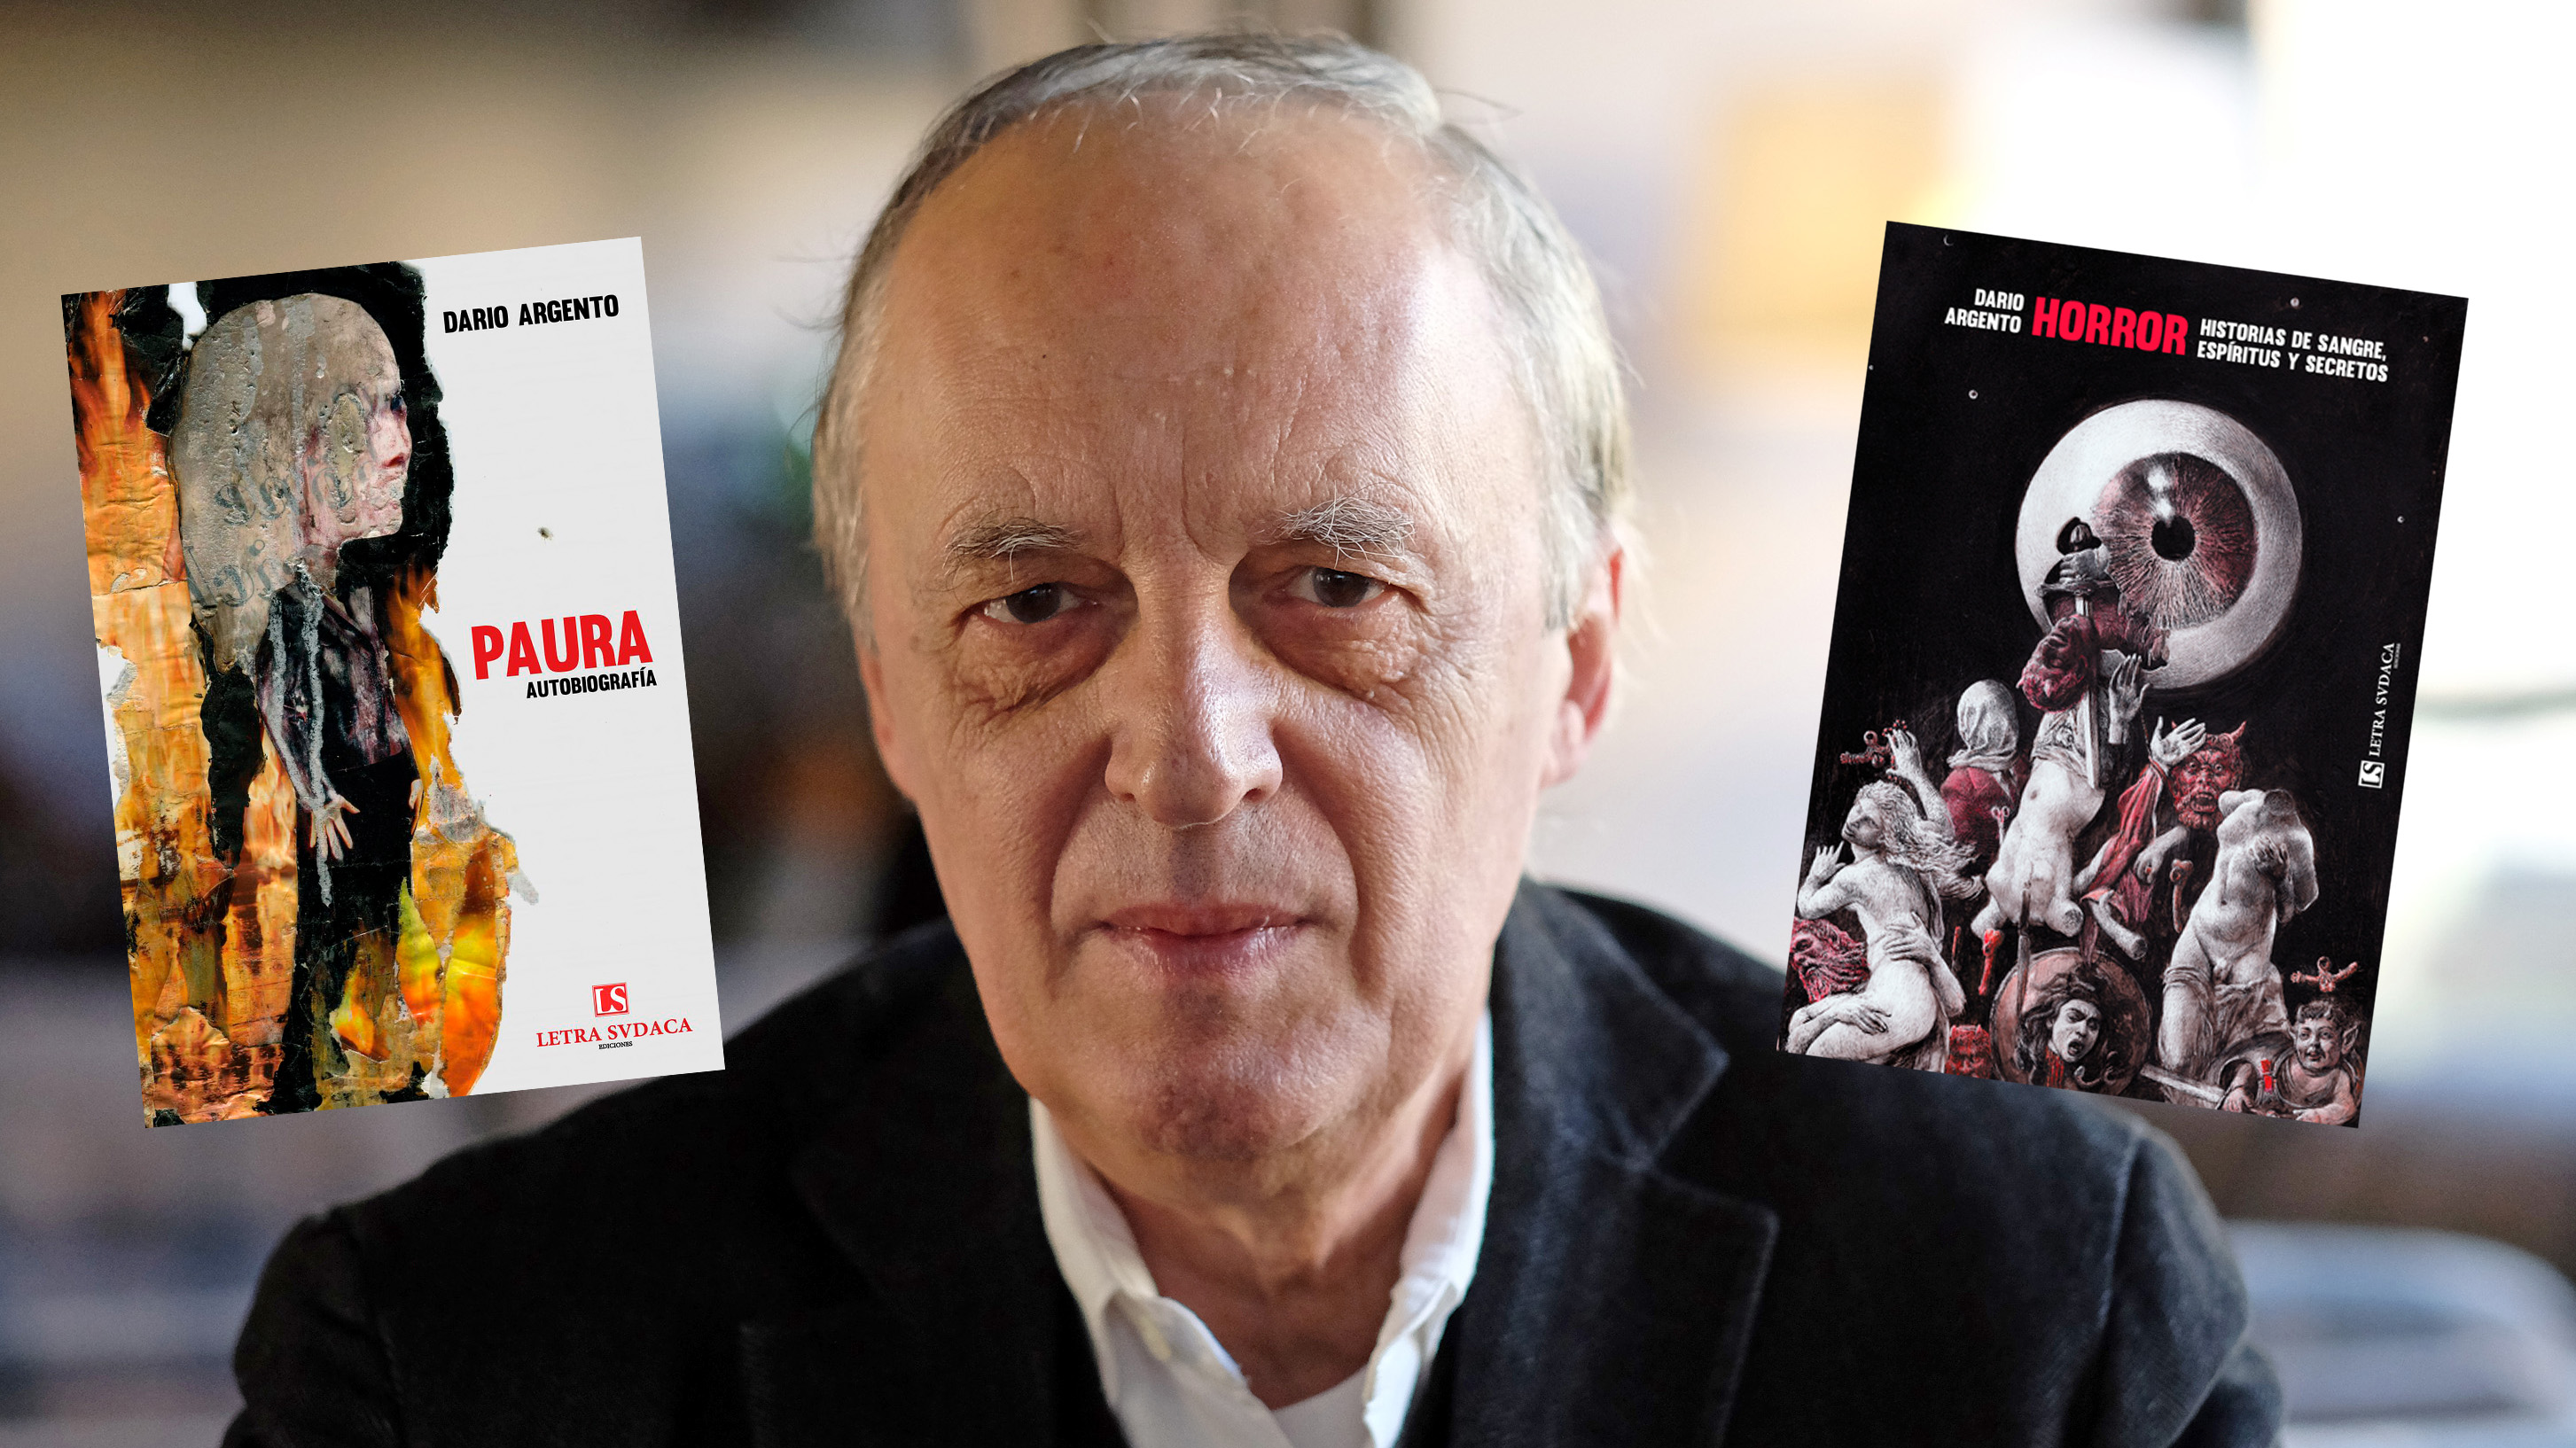 Darío Argento, el Rey del Terror del cine italiano, dialoga con sus propios  demonios - Infobae